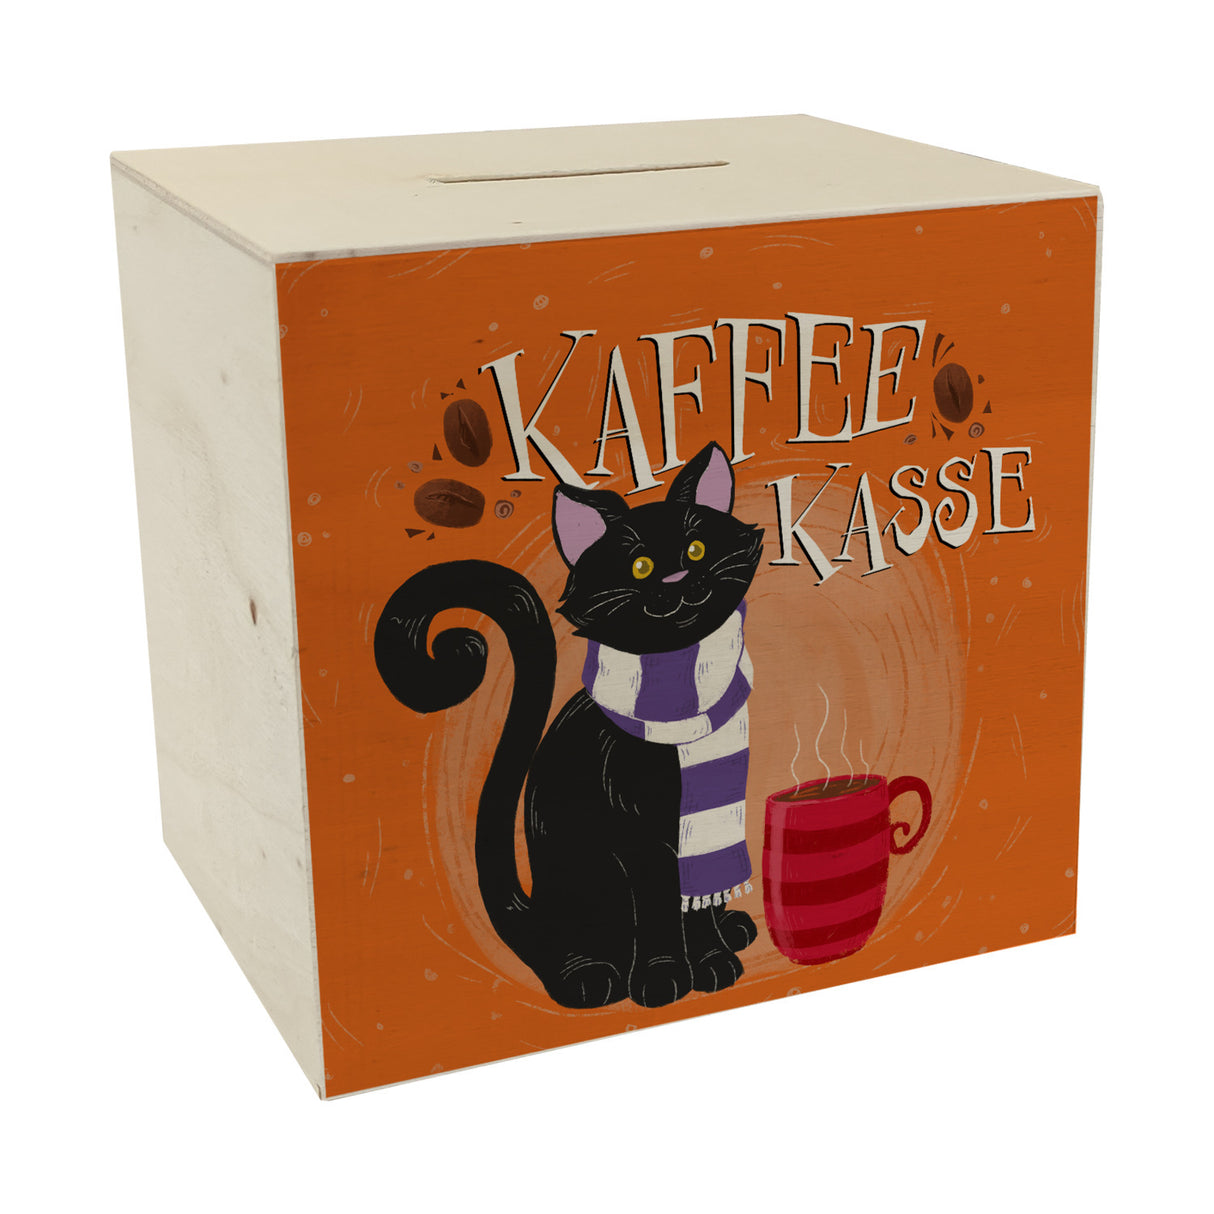 Herbstliche Kaffeekasse Spardose mit schwarzer Katze